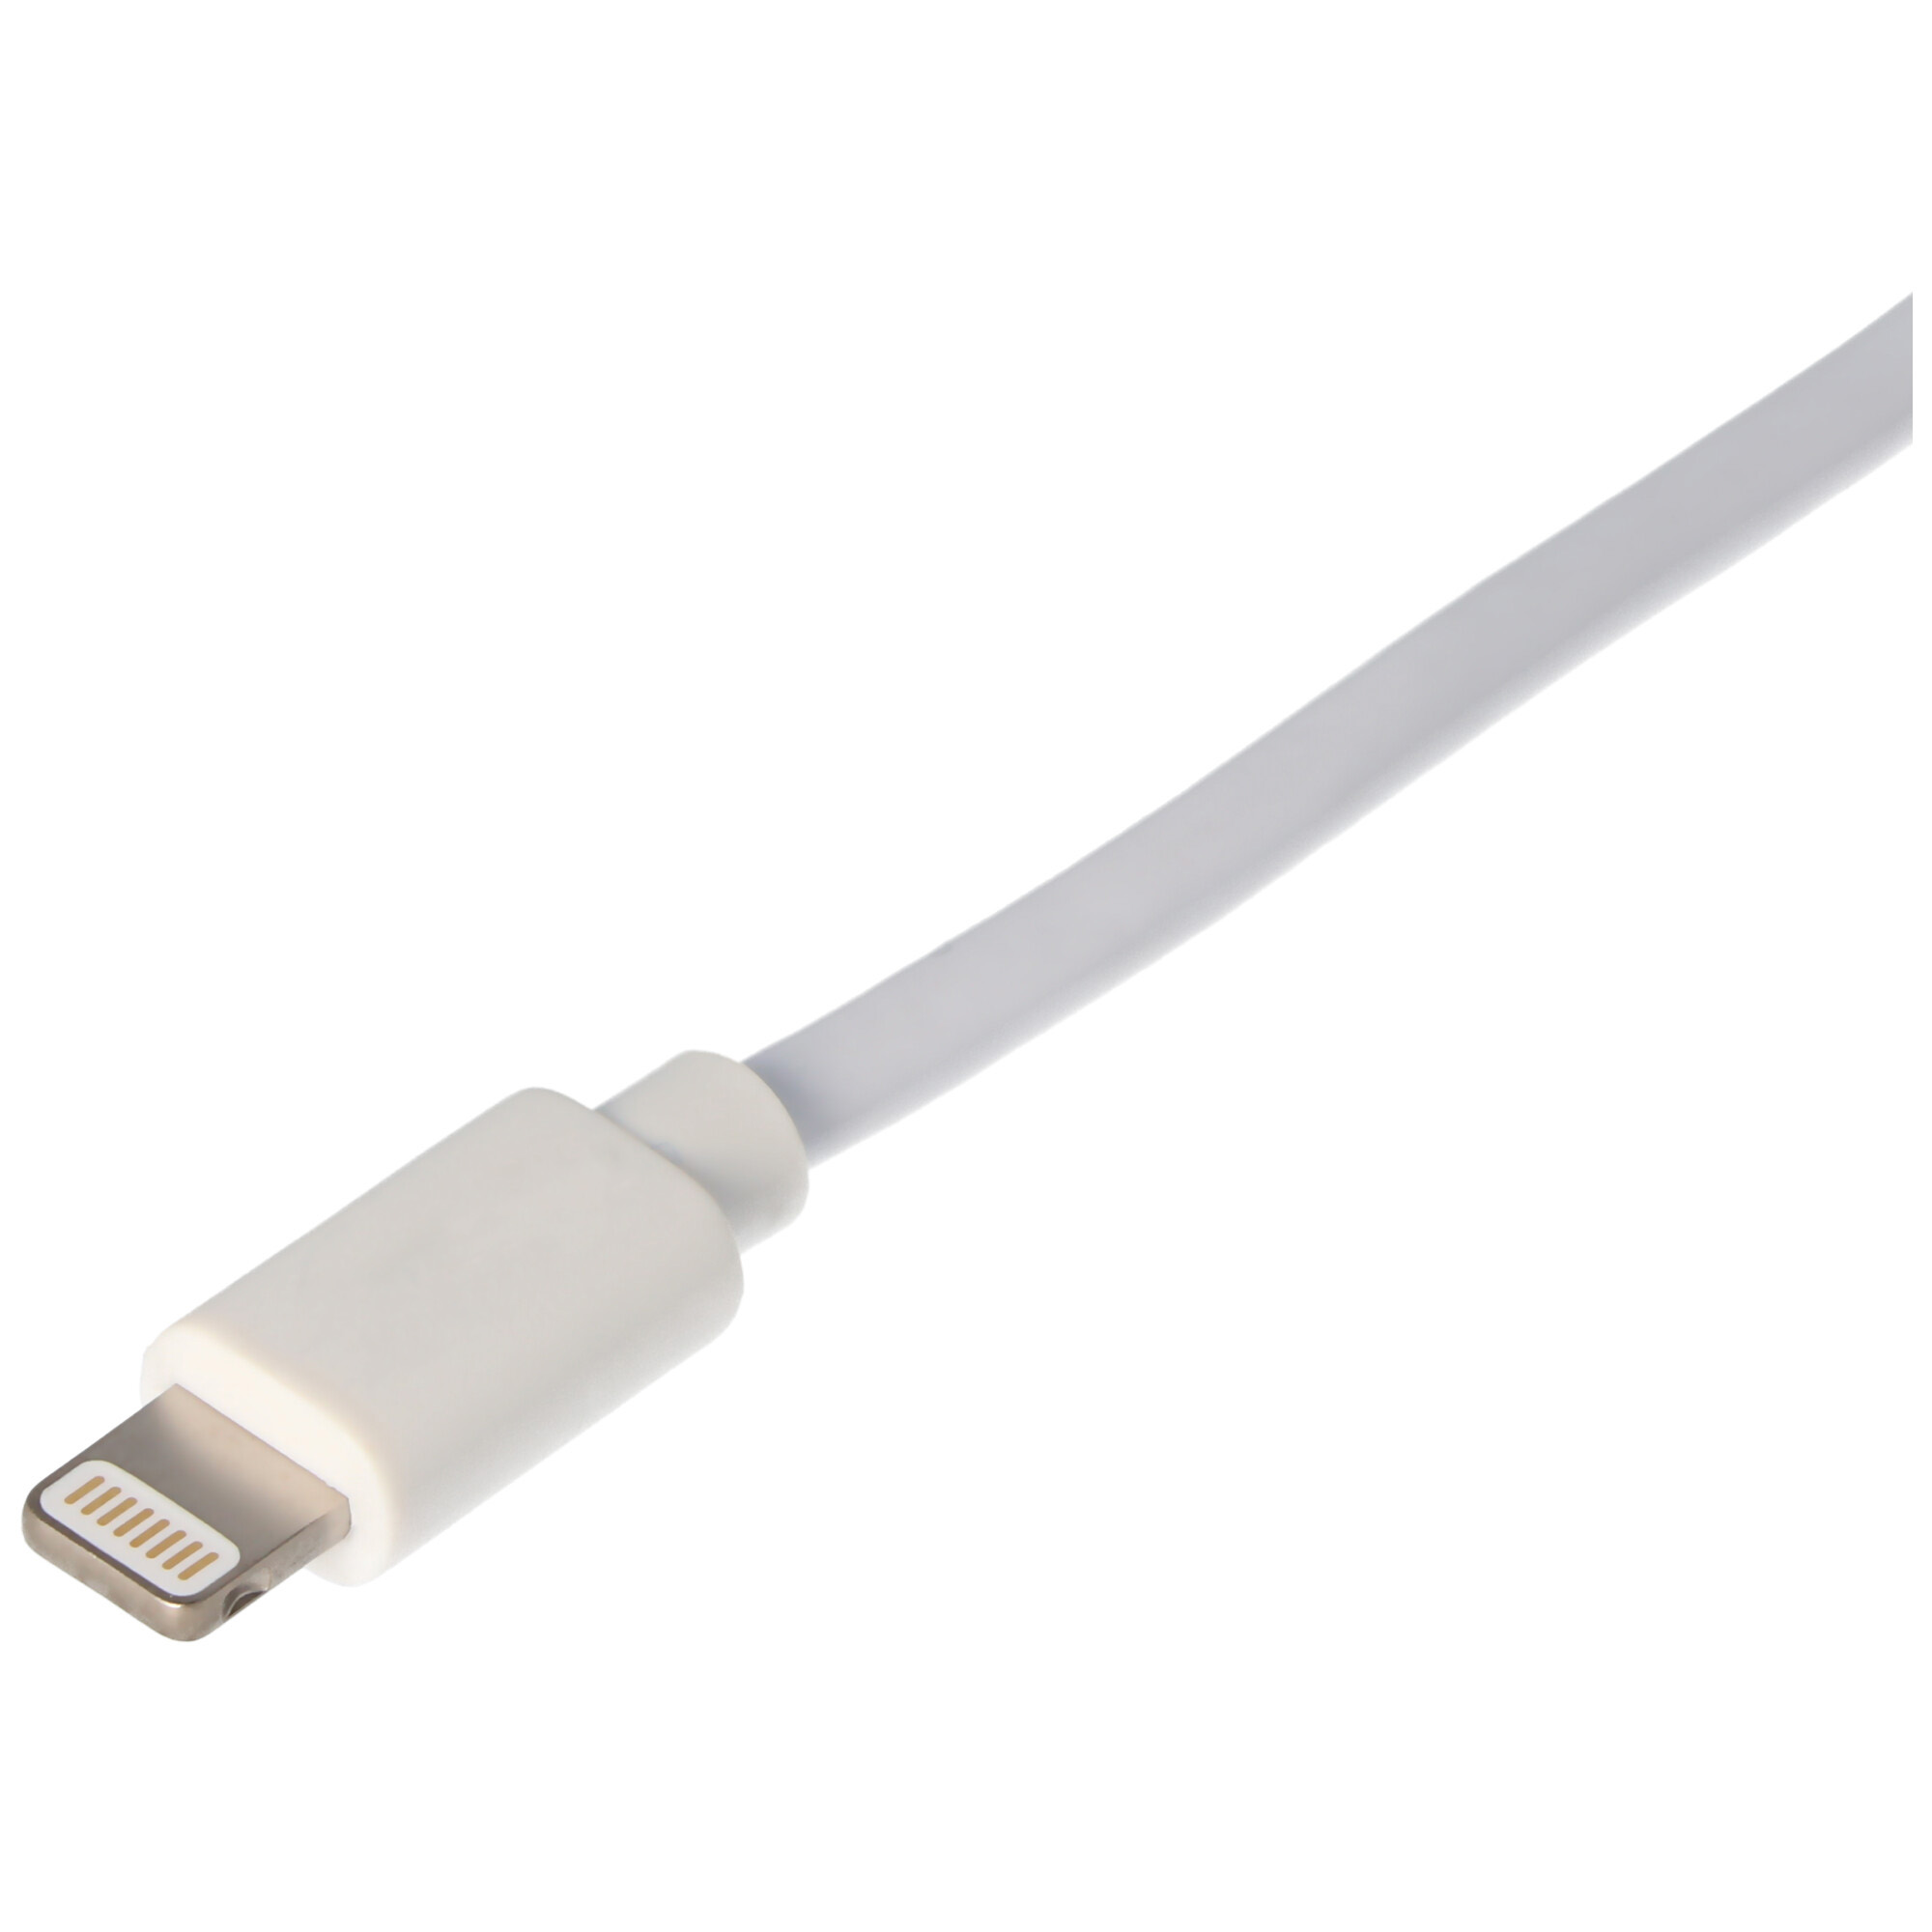 USB Lade- & Synckabel für iPhone, Apple iPod oder iPod mit Lightning Connector, weiß 2 Meter